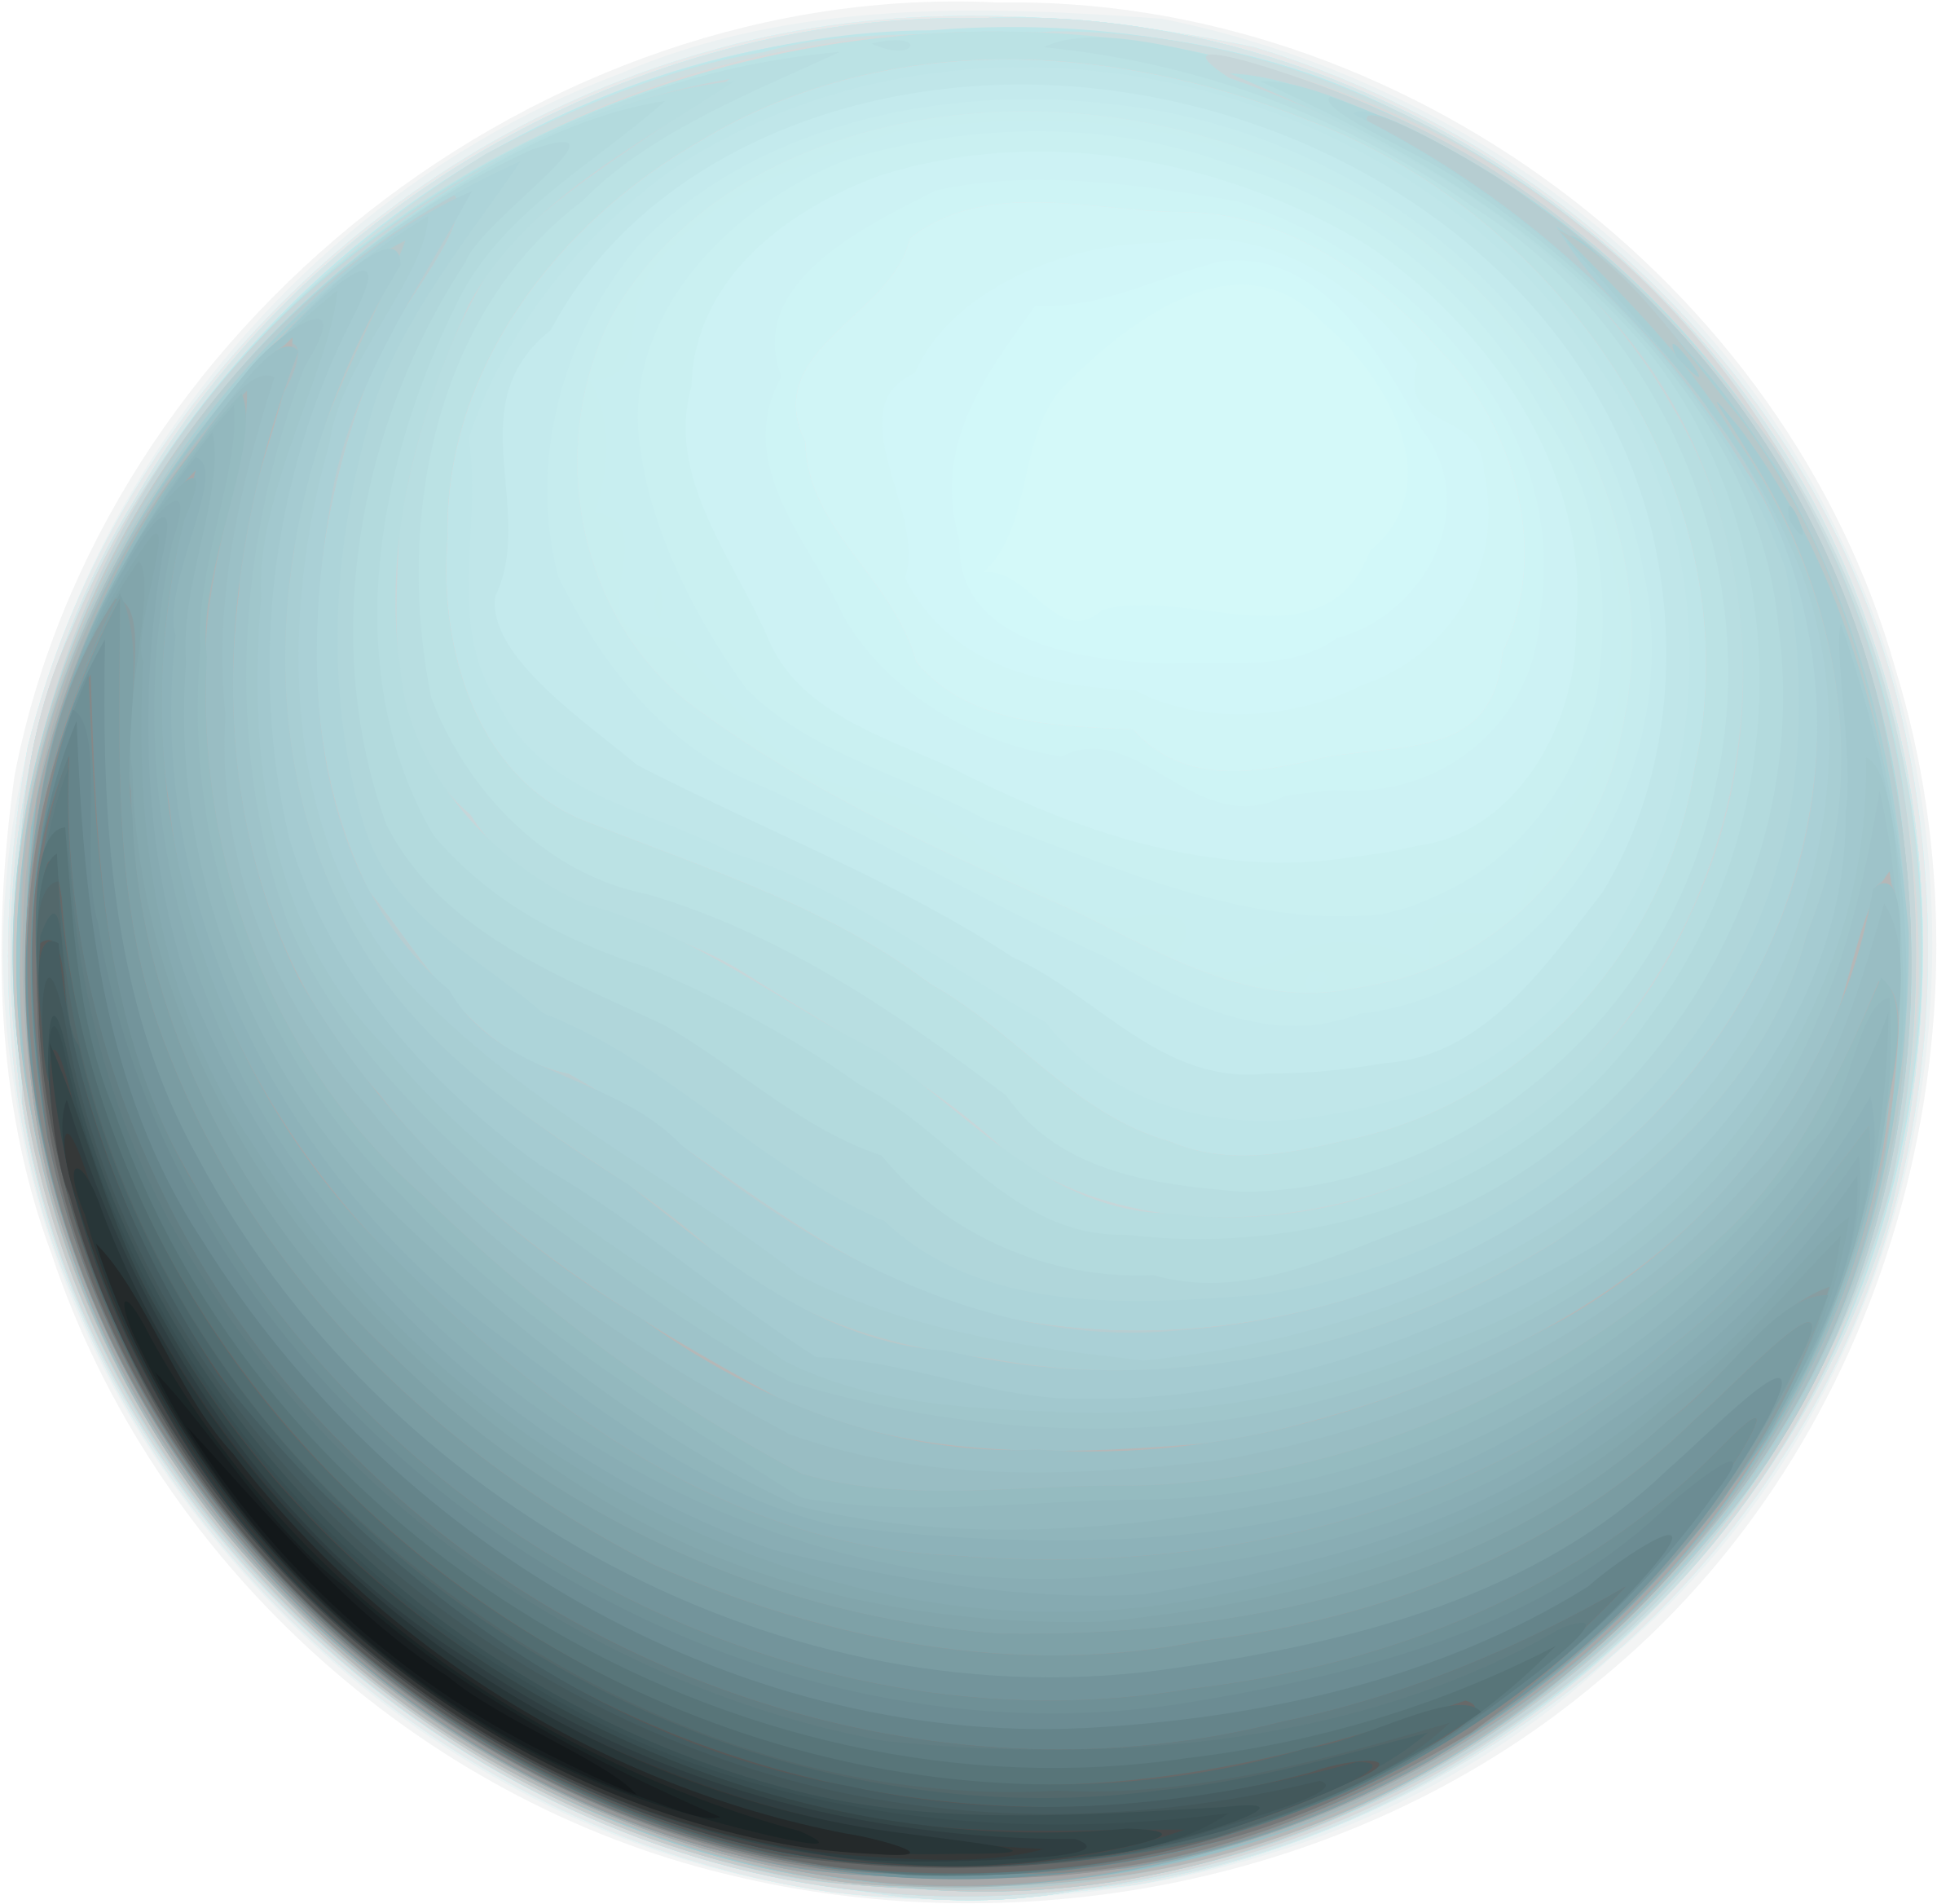 Uranus Planet Graphic Representation